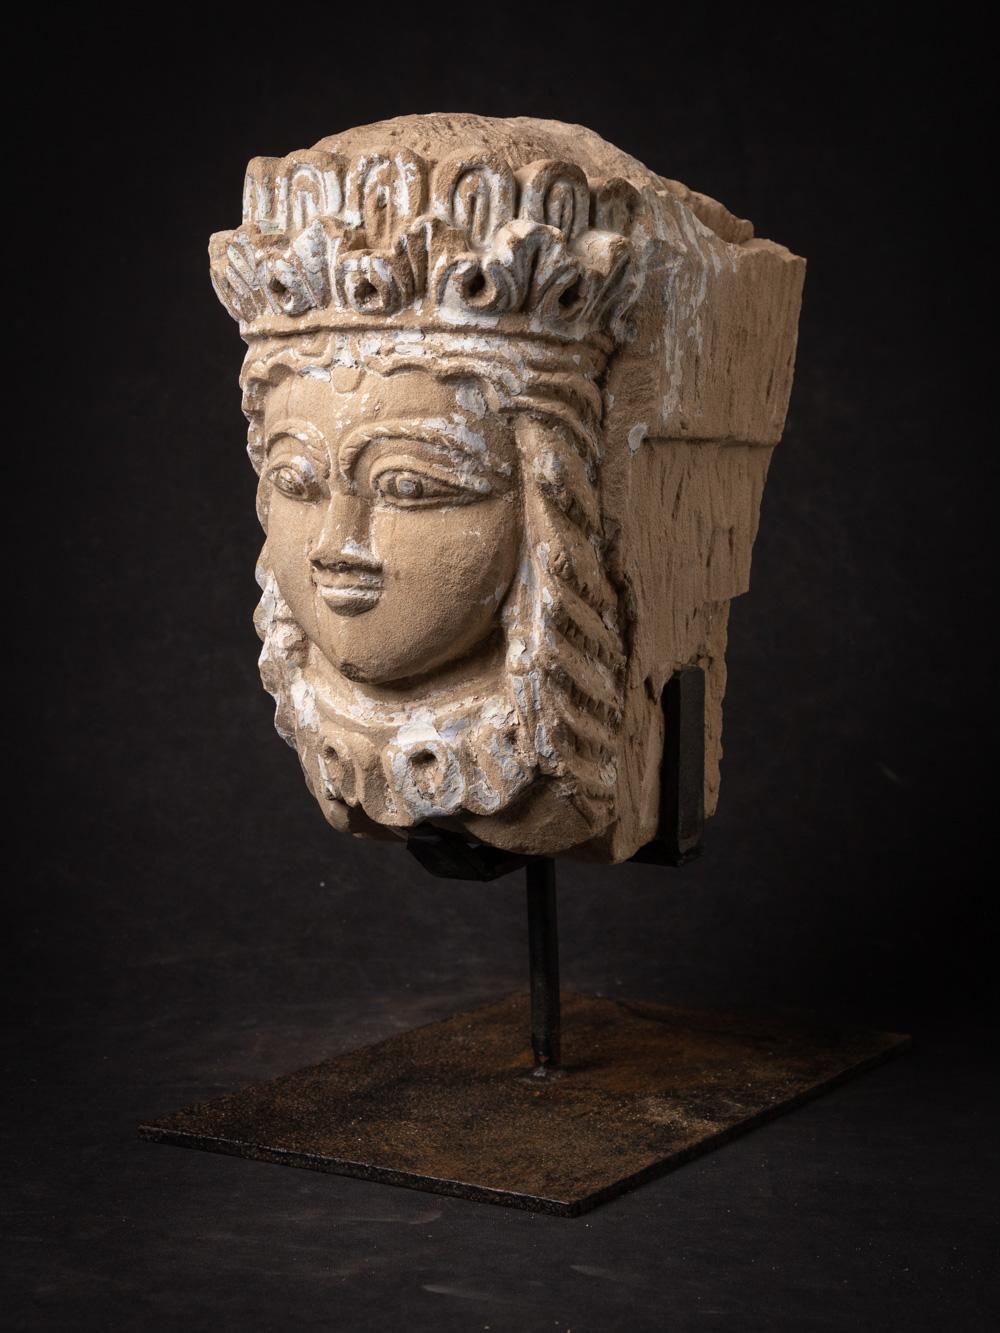 La tête antique en grès de l'Inde est un artefact remarquable et historiquement significatif, aux racines culturelles et artistiques profondes. Fabriquée en grès, cette tête mesure 42 cm de hauteur, 20,5 cm de largeur et 32 cm de profondeur, socle